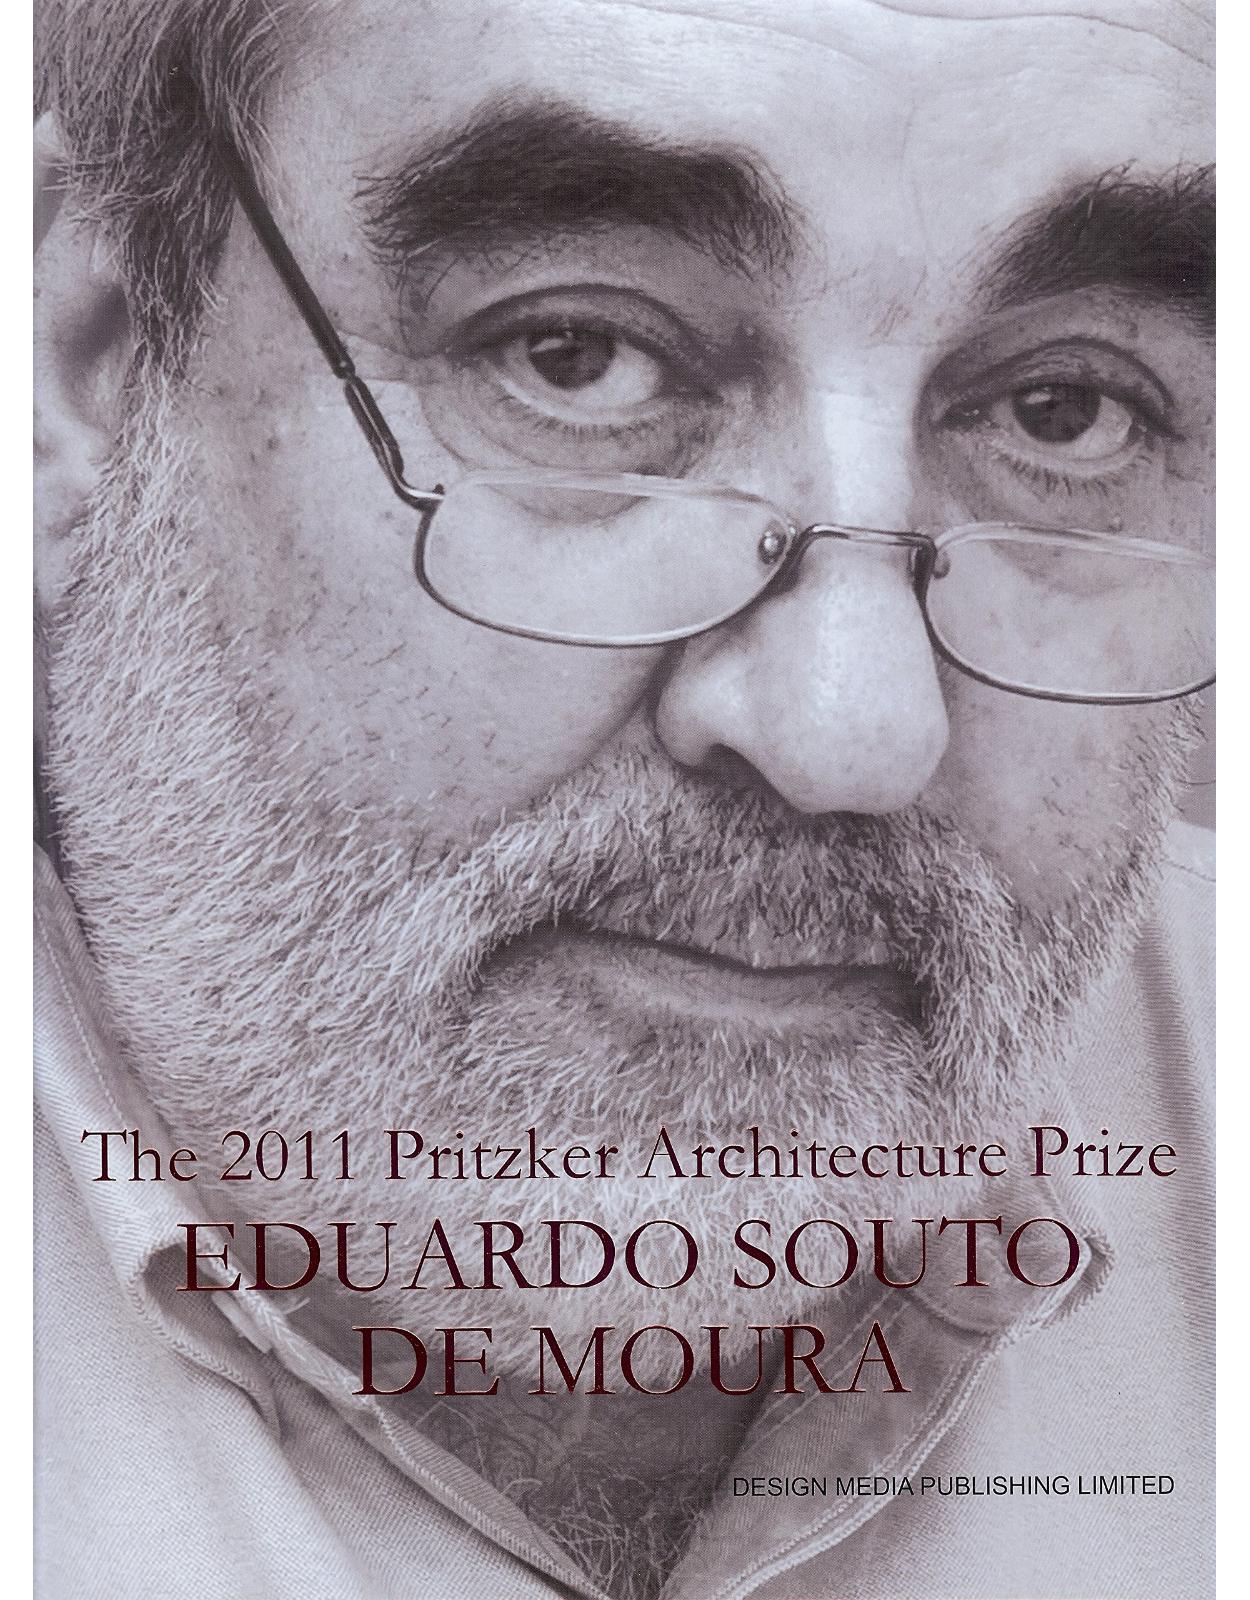 The Pritzker Architecture Prize 2011 Eduardo Souto de Moura